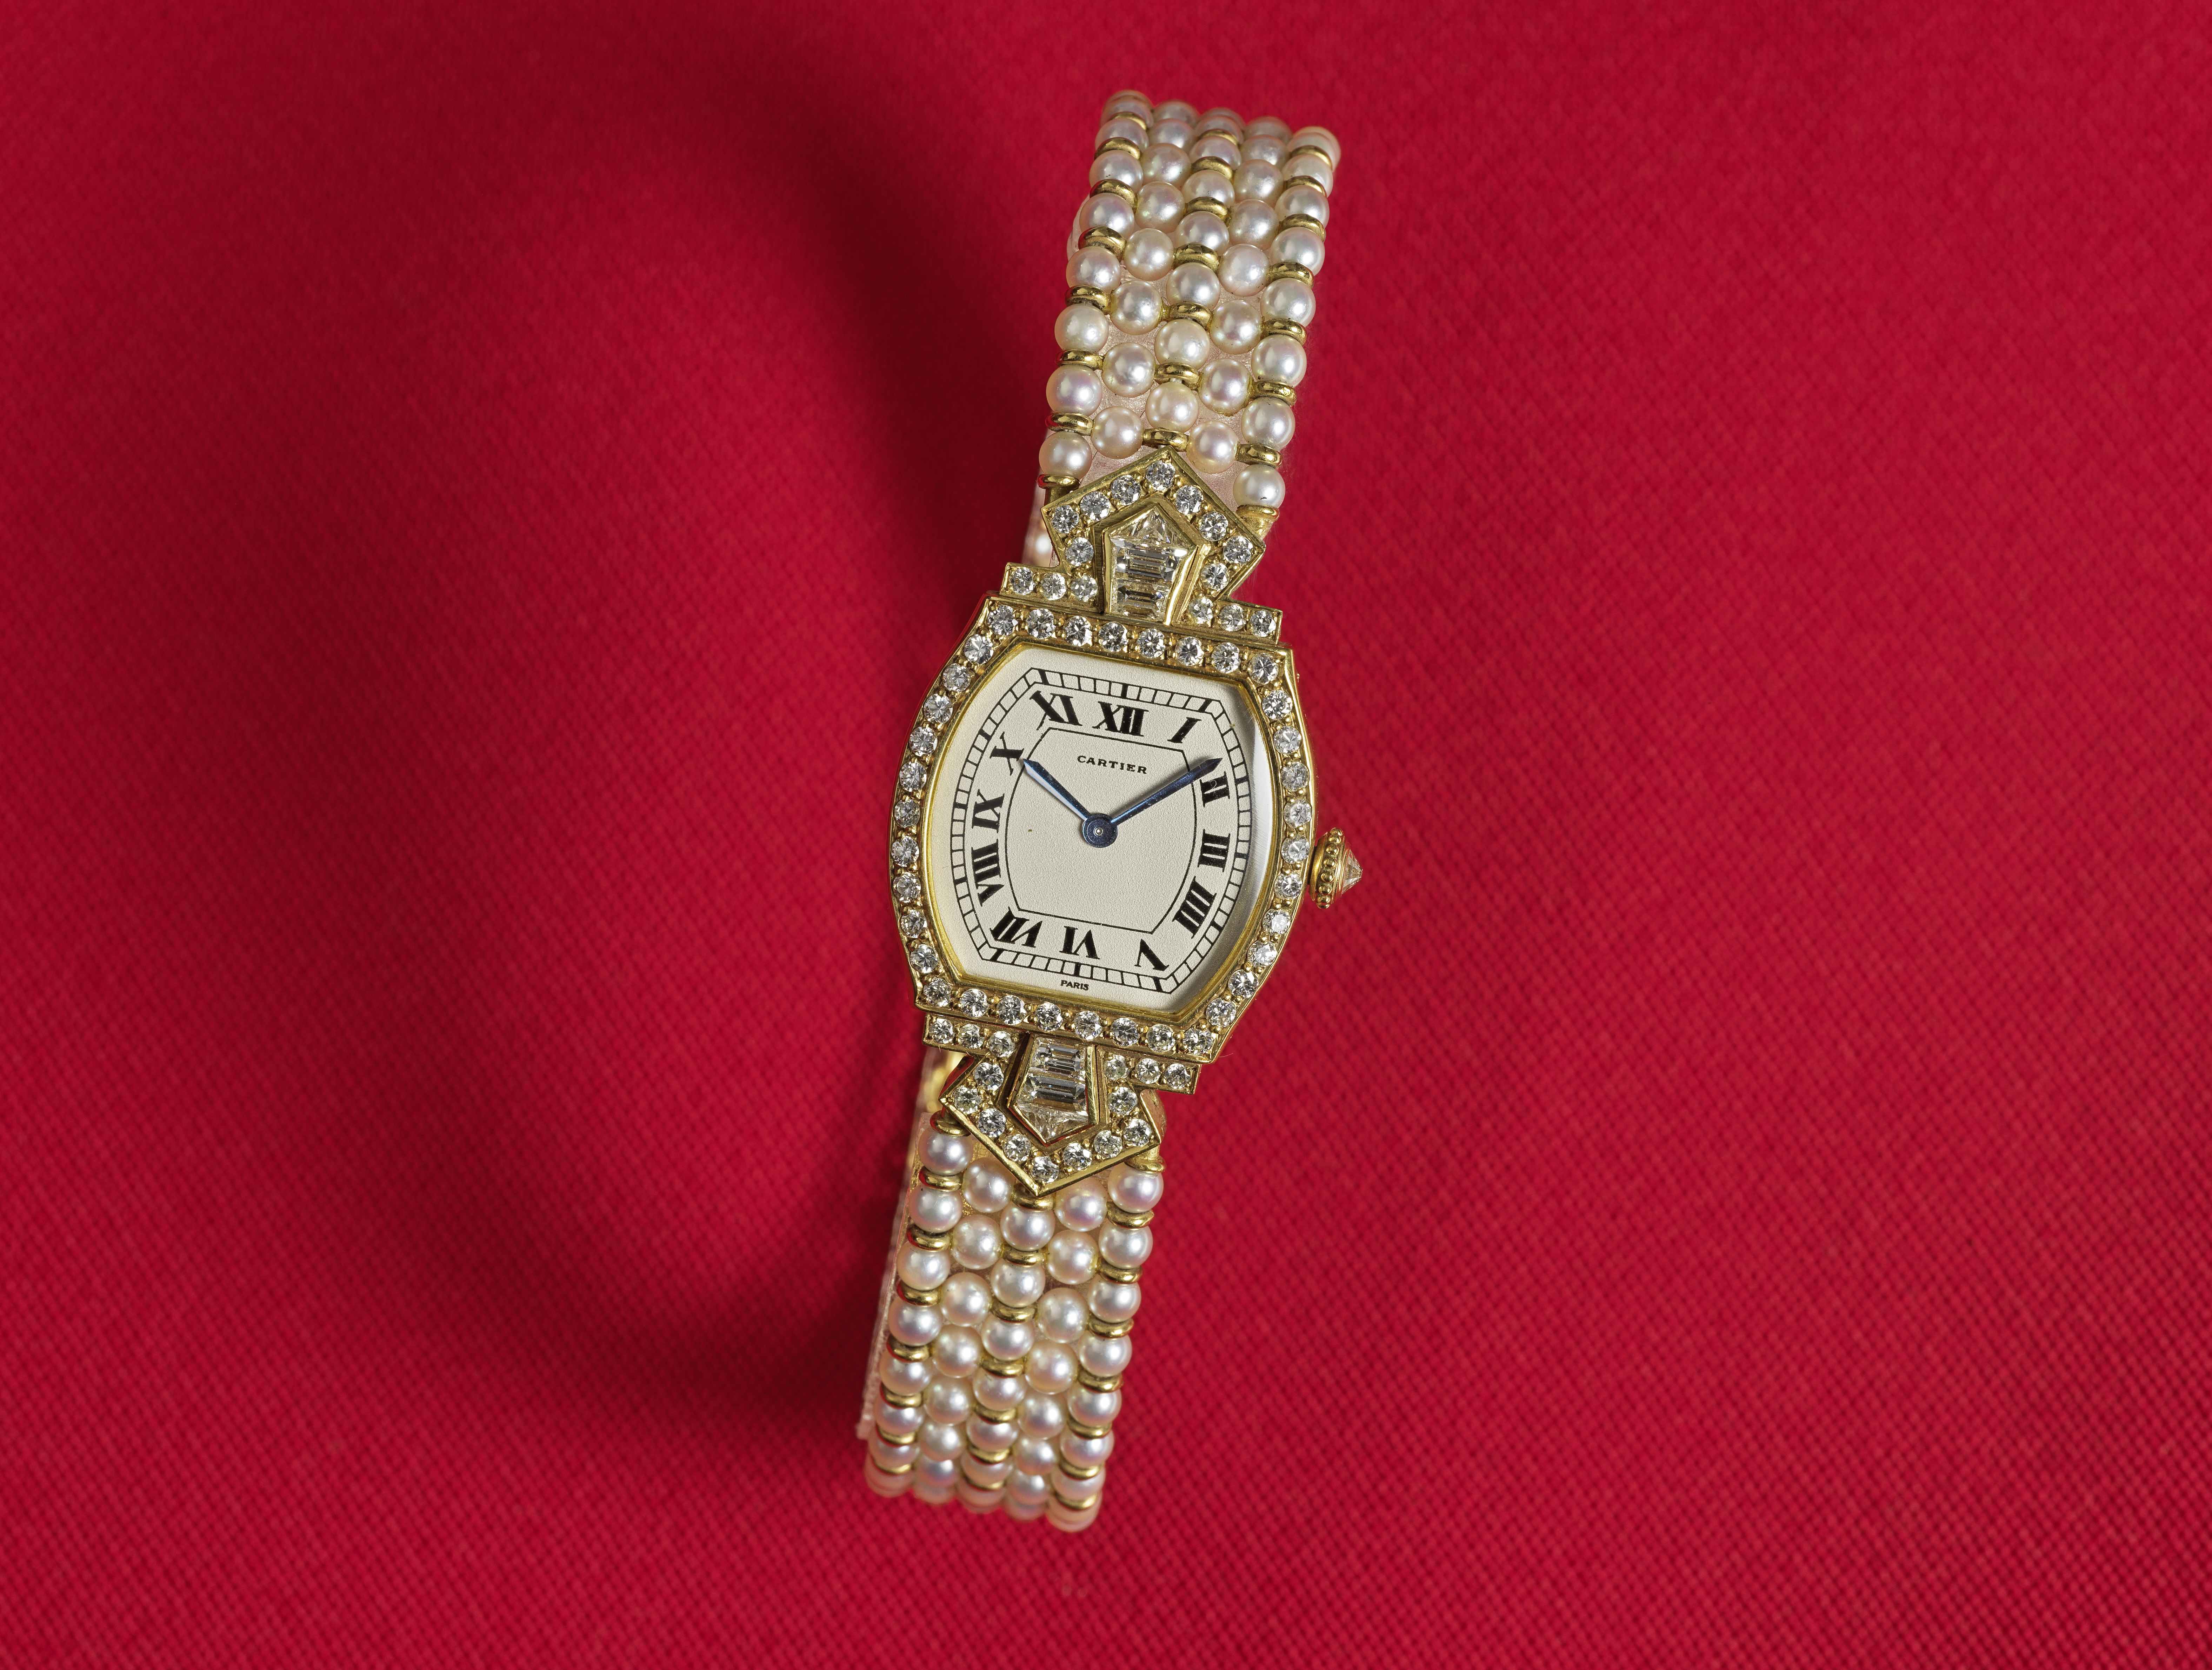 Cartier. Rare et belle montre de dame en or jaune 18K (750) sertie de diamants et bracelet en pe... - Image 2 of 2